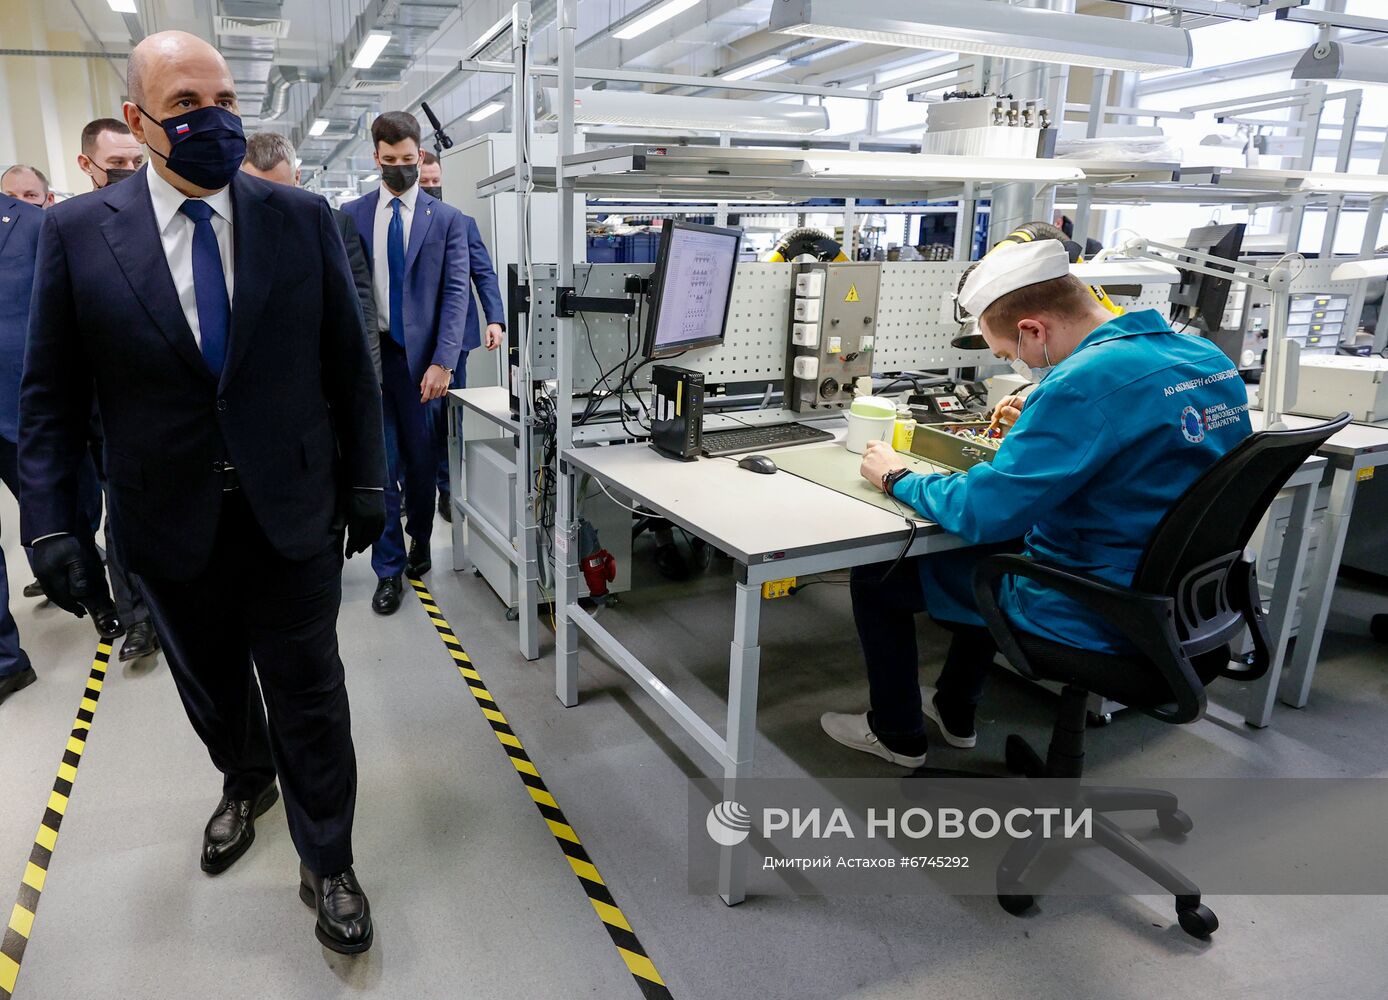 Рабочая поездка премьер-министра РФ М. Мишустина в Центральный федеральный округ